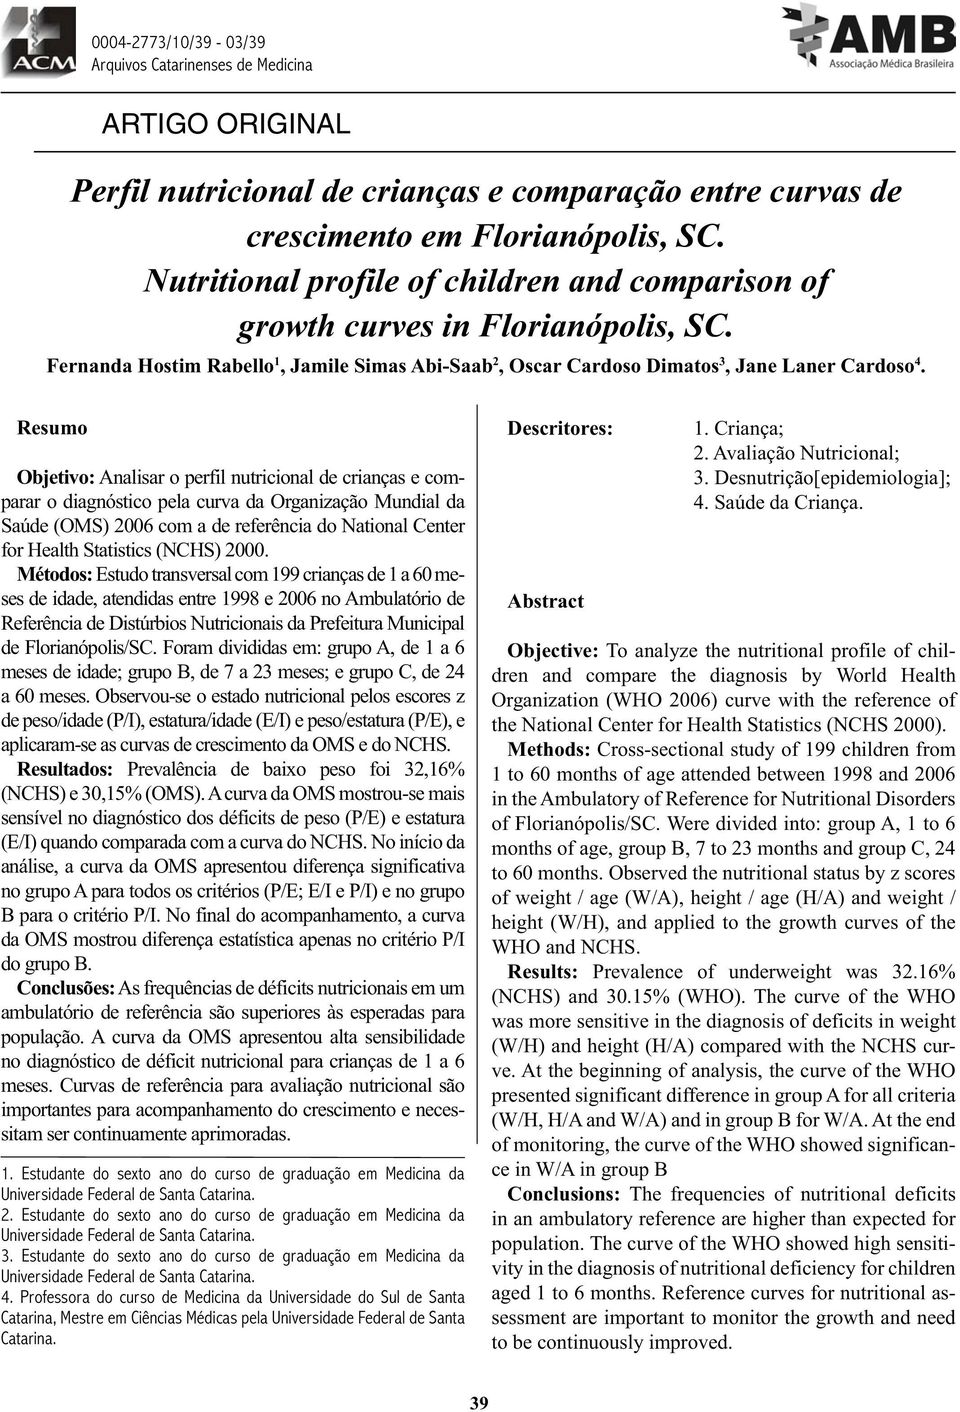 Resumo Objetivo: Analisar o perfil nutricional de crianças e comparar o diagnóstico pela curva da Organização Mundial da Saúde (OMS) 2006 com a de referência do National Center for Health Statistics